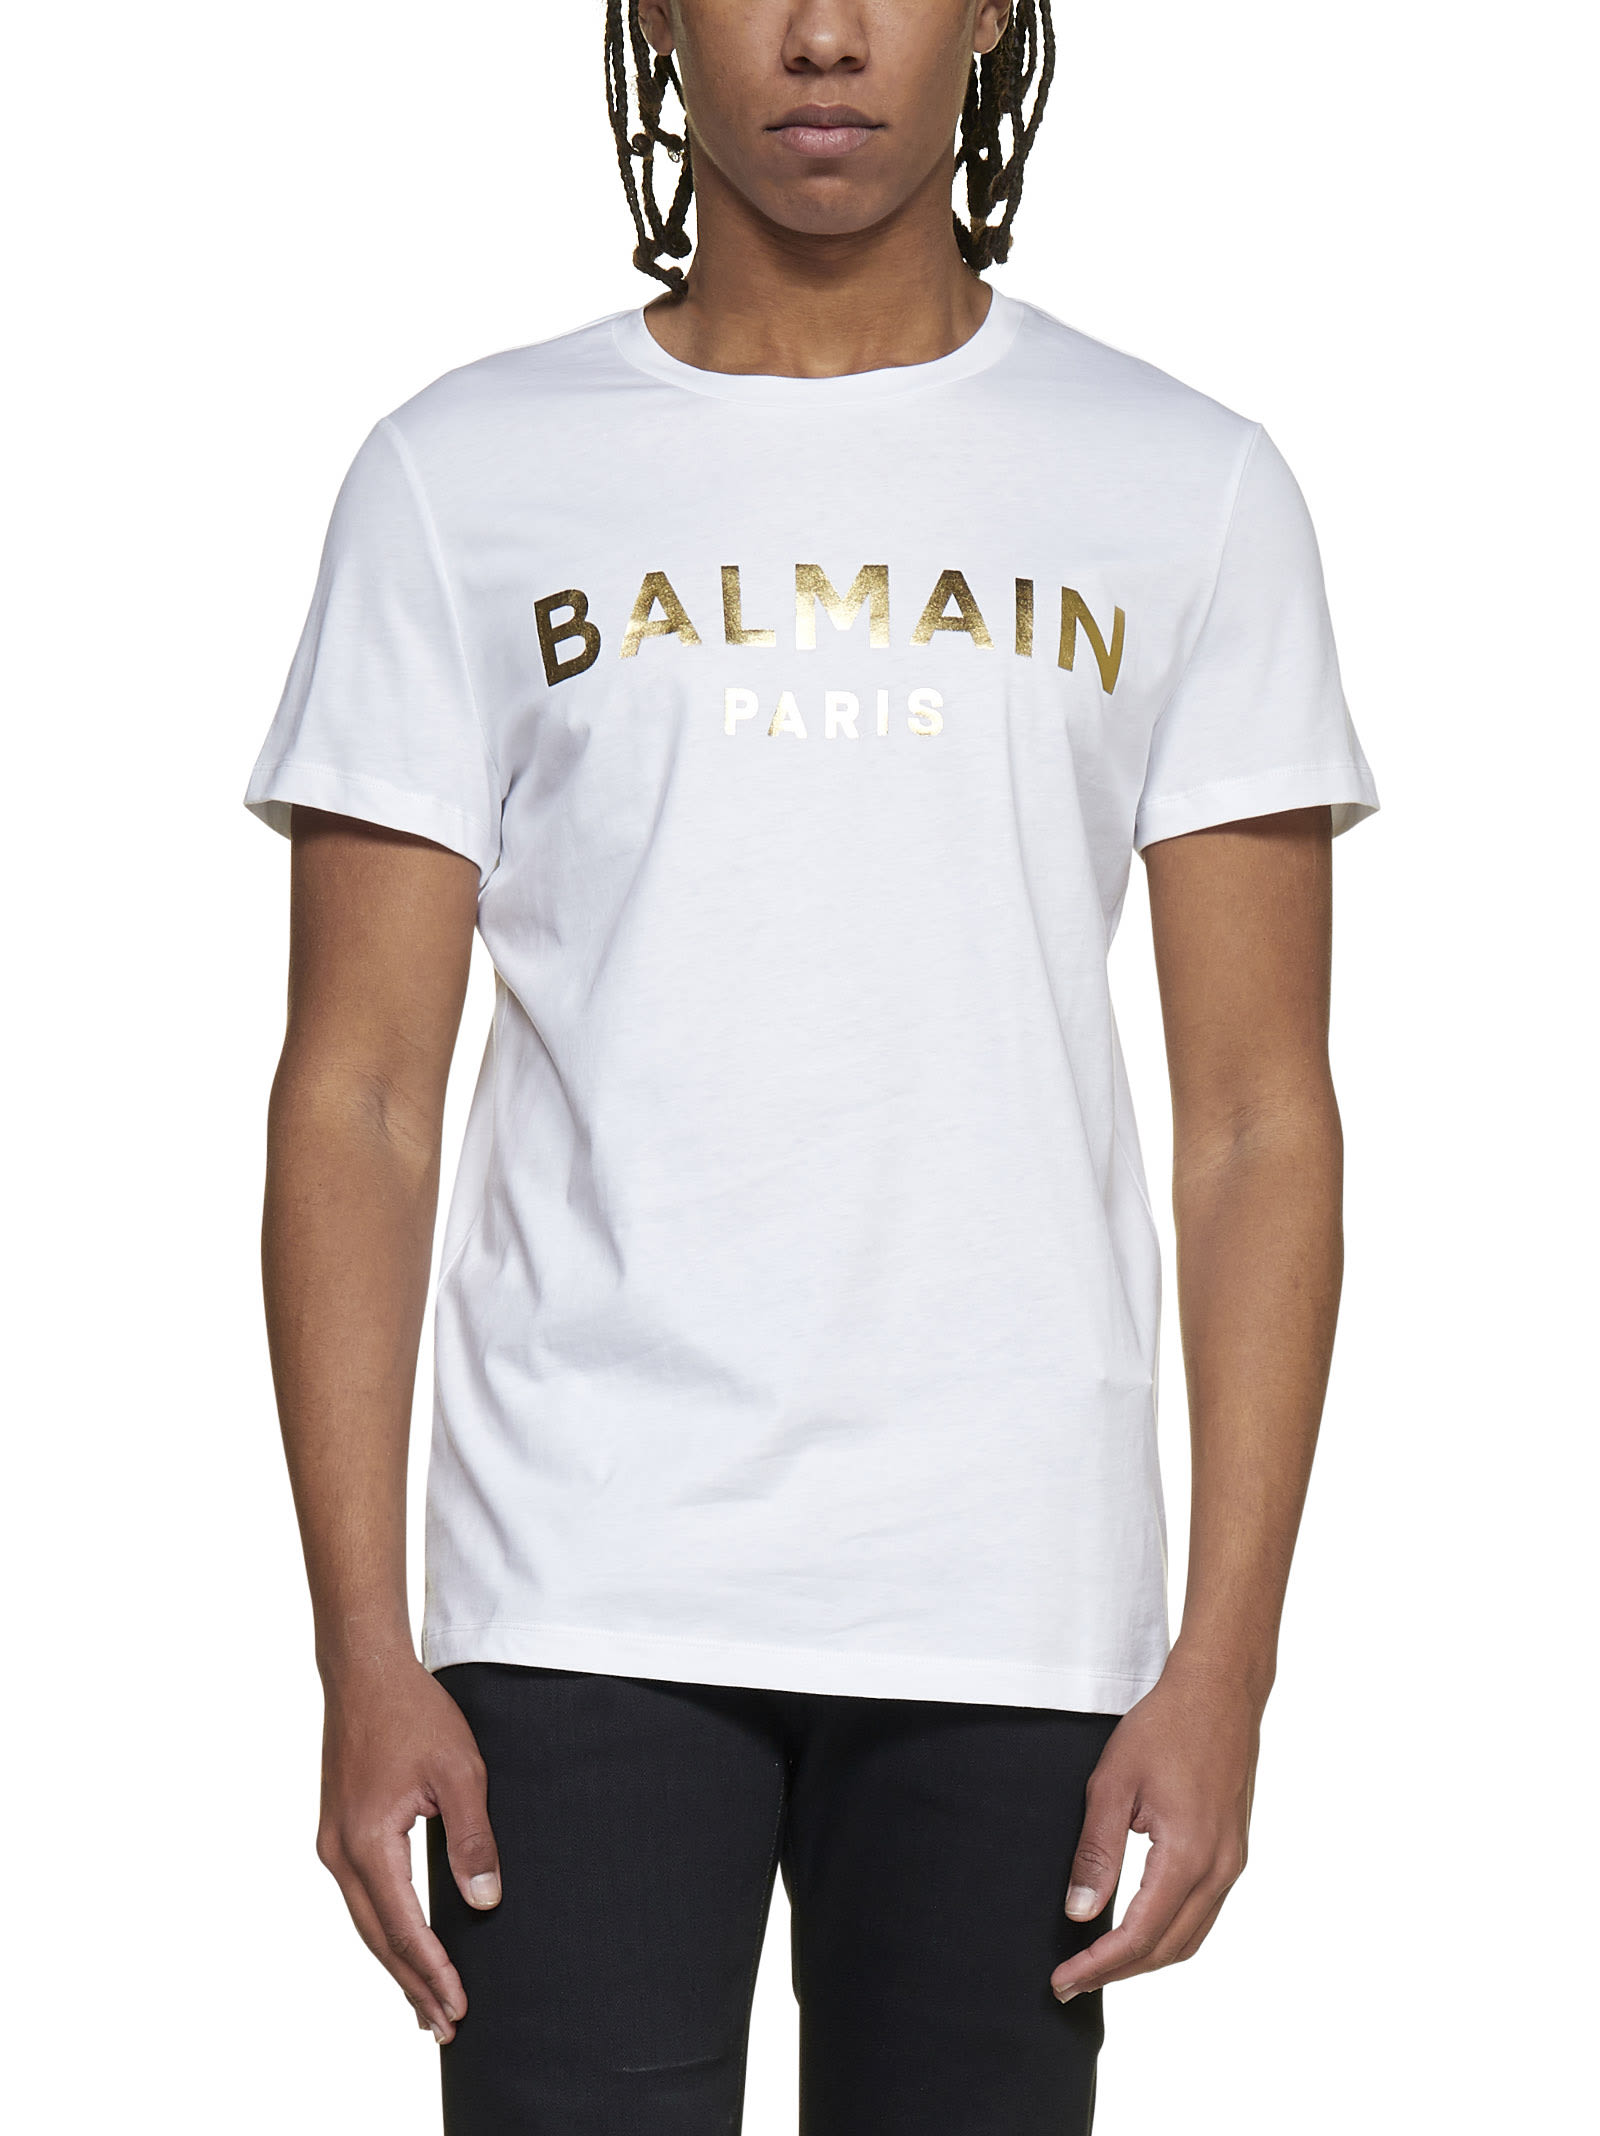 Balmain Cotton T-shirt With Laminated Logo Print In White | ModeSens